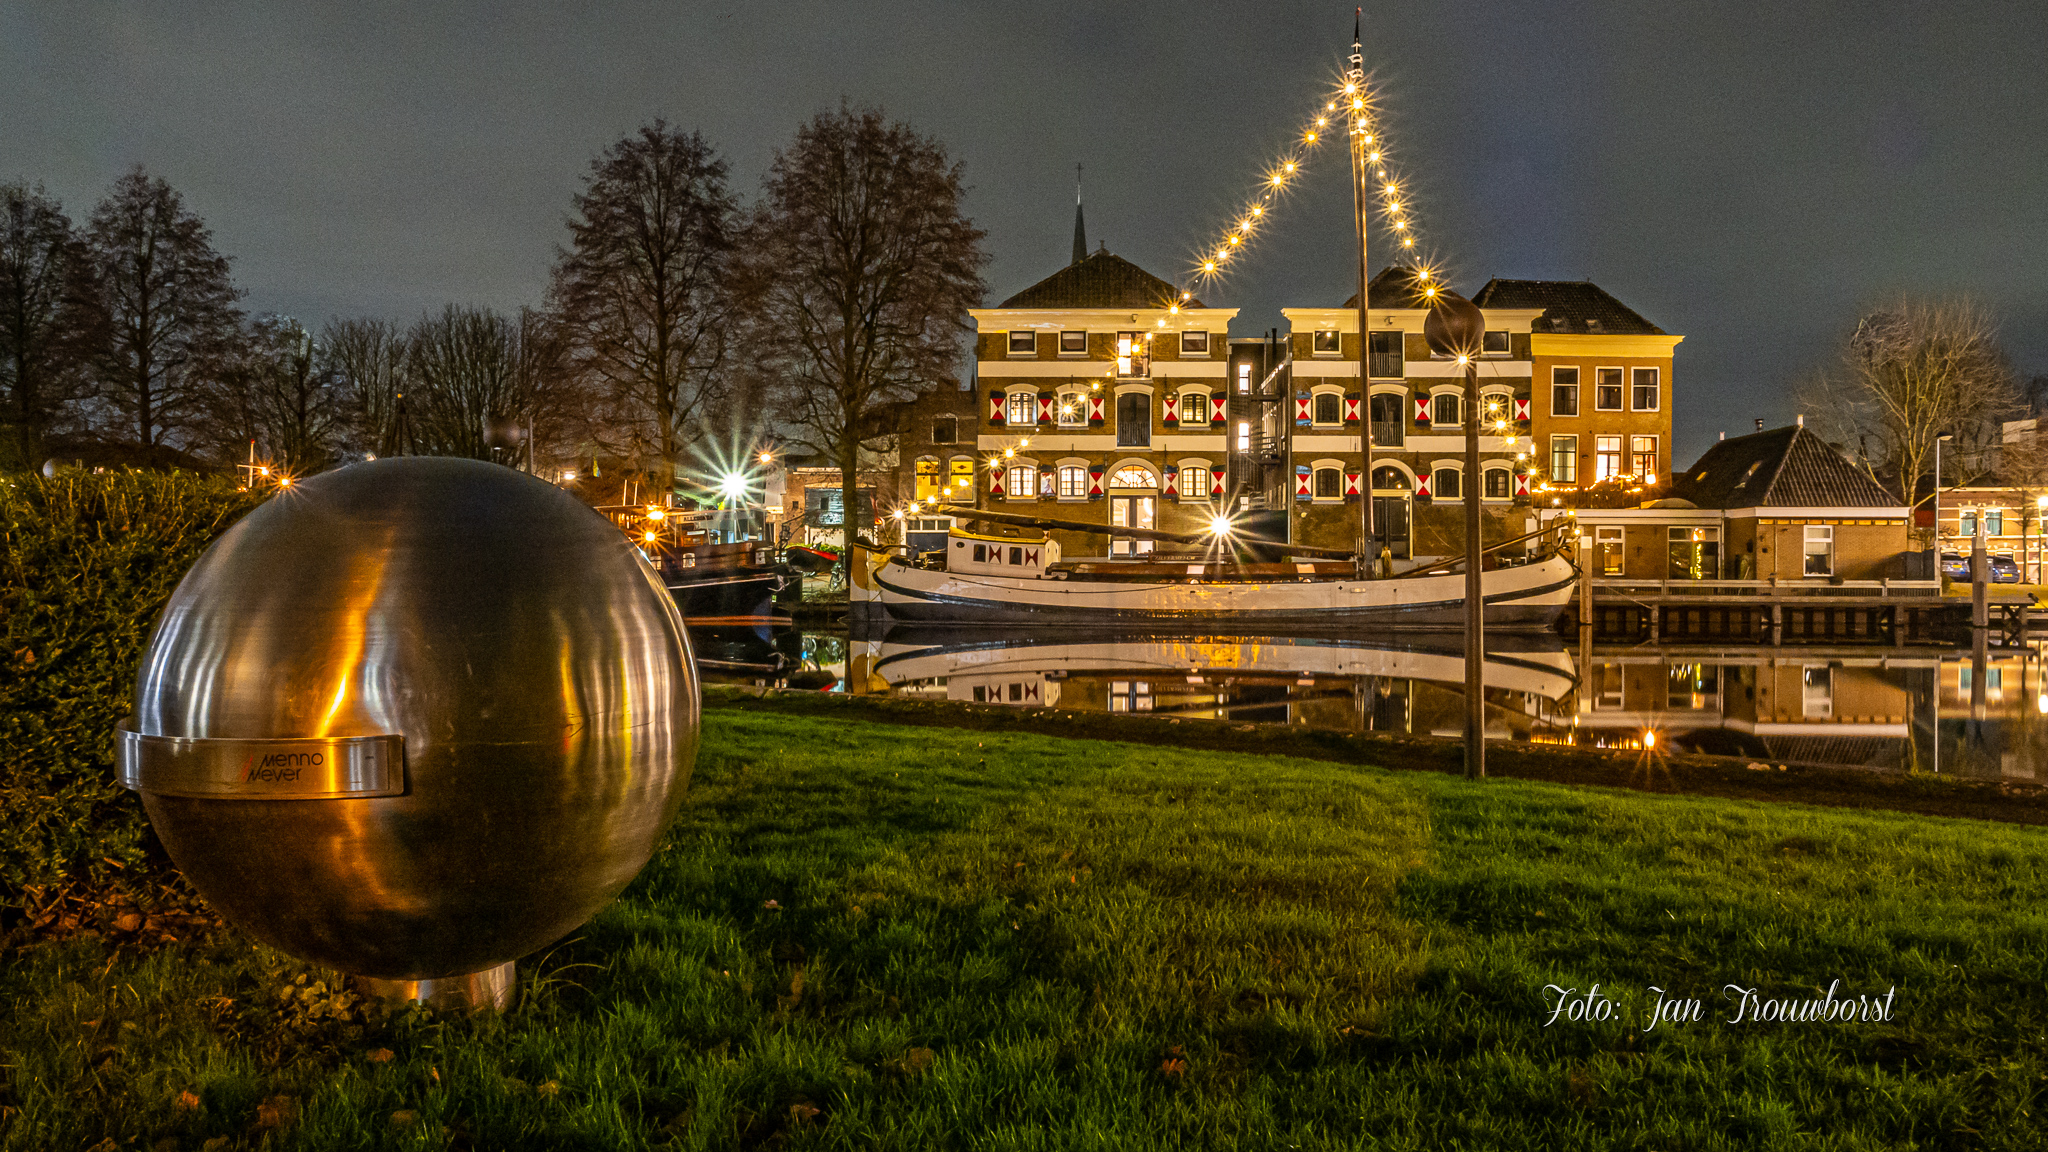 Museumhaven Gouda - Verlichte schepen, foto: Jan Trouwborst